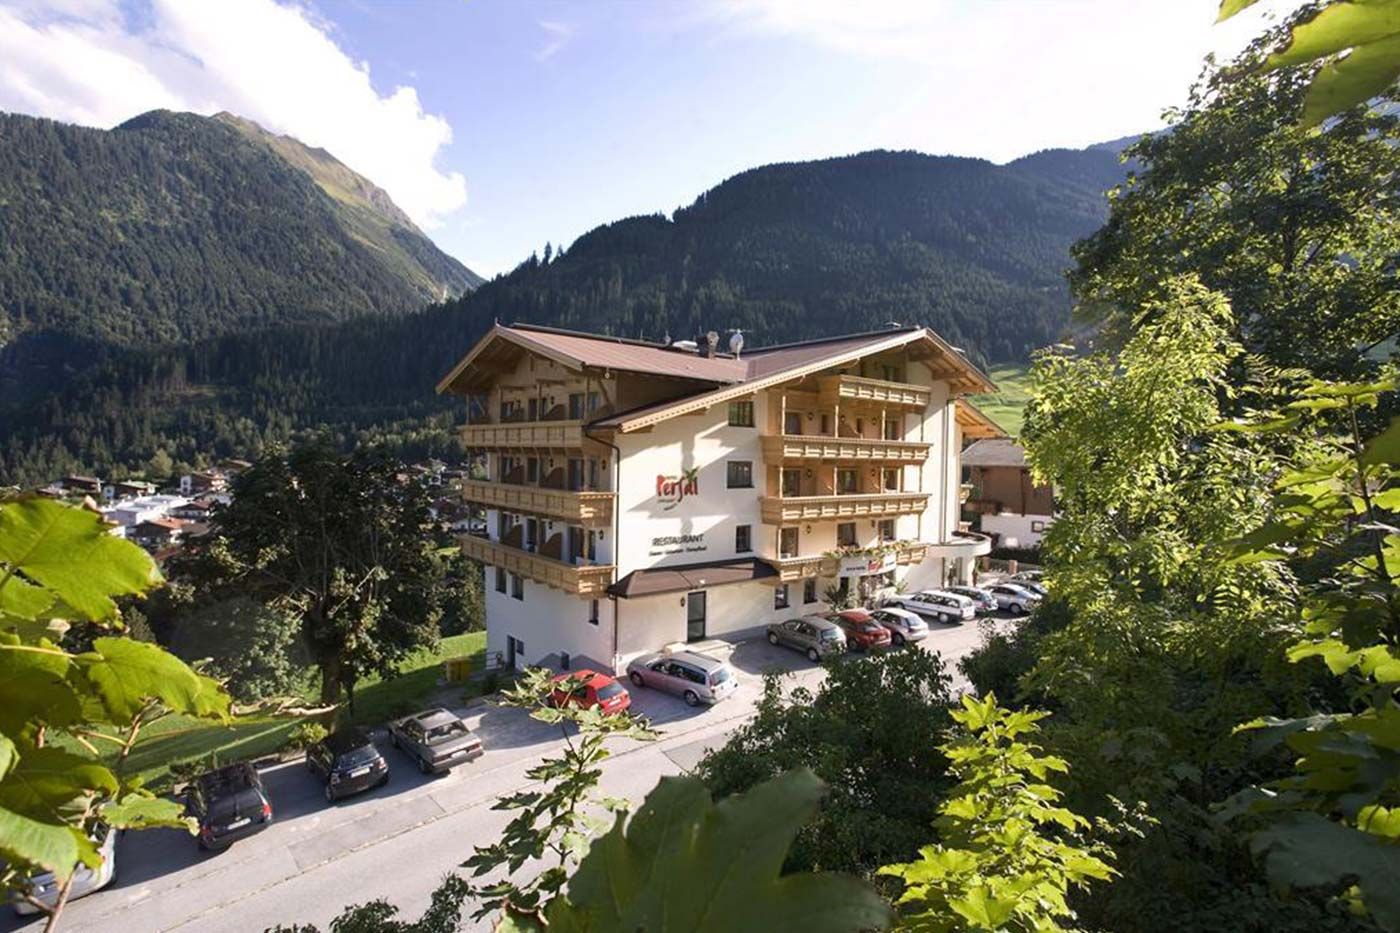 Ihr traditionelles Hotel in Finkenberg, mitten in den Tiroler Bergen!